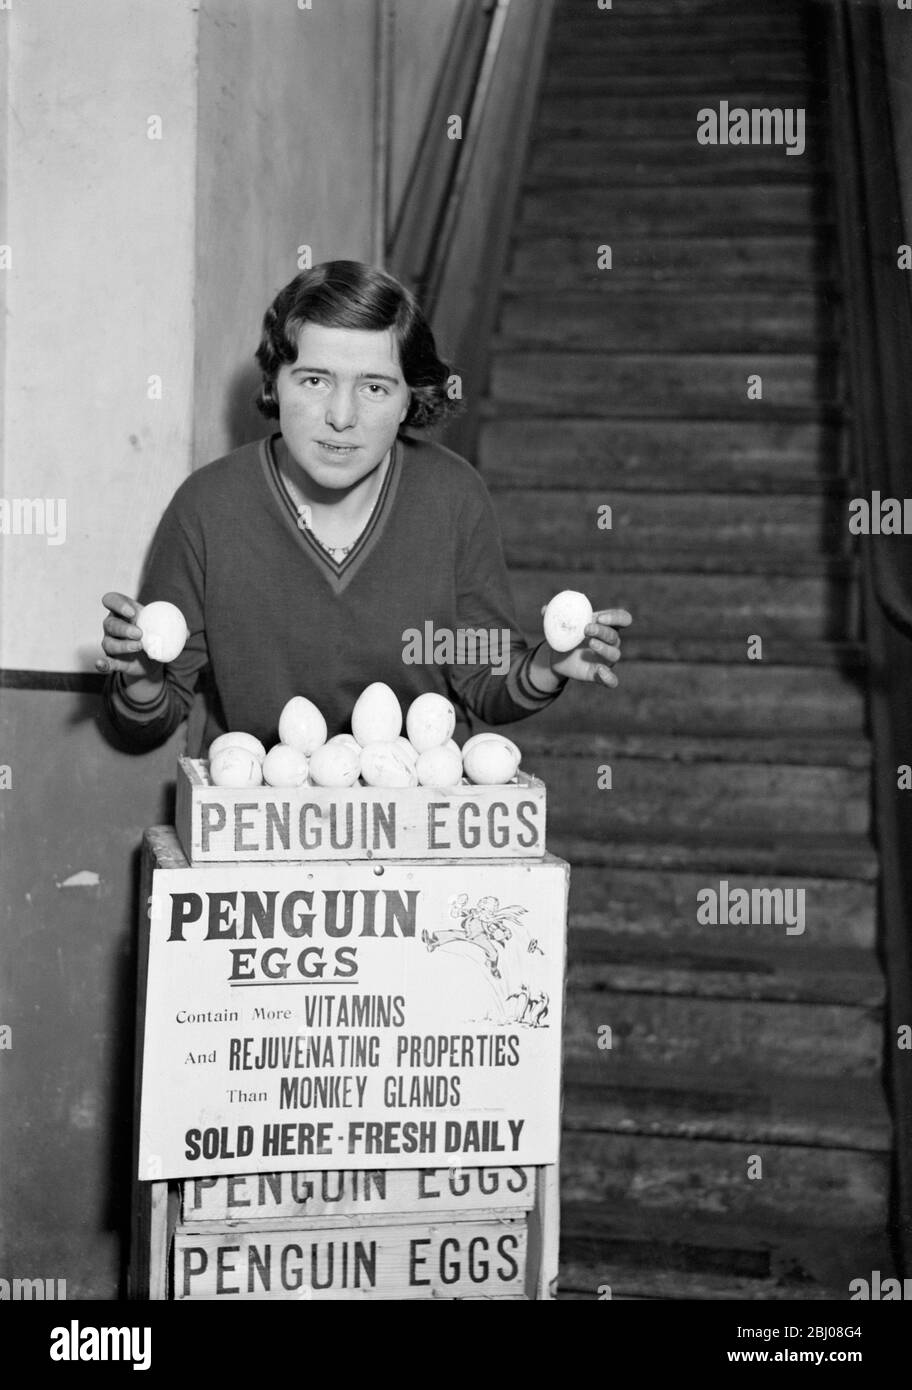 Partie de la première expédition de 3300 oeufs de pingouins de l'Antarctique reçue par Messers George Tabor Ltd . Ils sont considérés comme une grande délicatesse et dans la saveur ressemblent à des oeufs de Pluvier . En raison de leur taille, ils doivent être cuits pendant au moins 20 minutes - - - 14 avril 1932 - - - - - ils contiennent plus de vitamines et de propriétés rajeunissants que les glandes de singe Banque D'Images